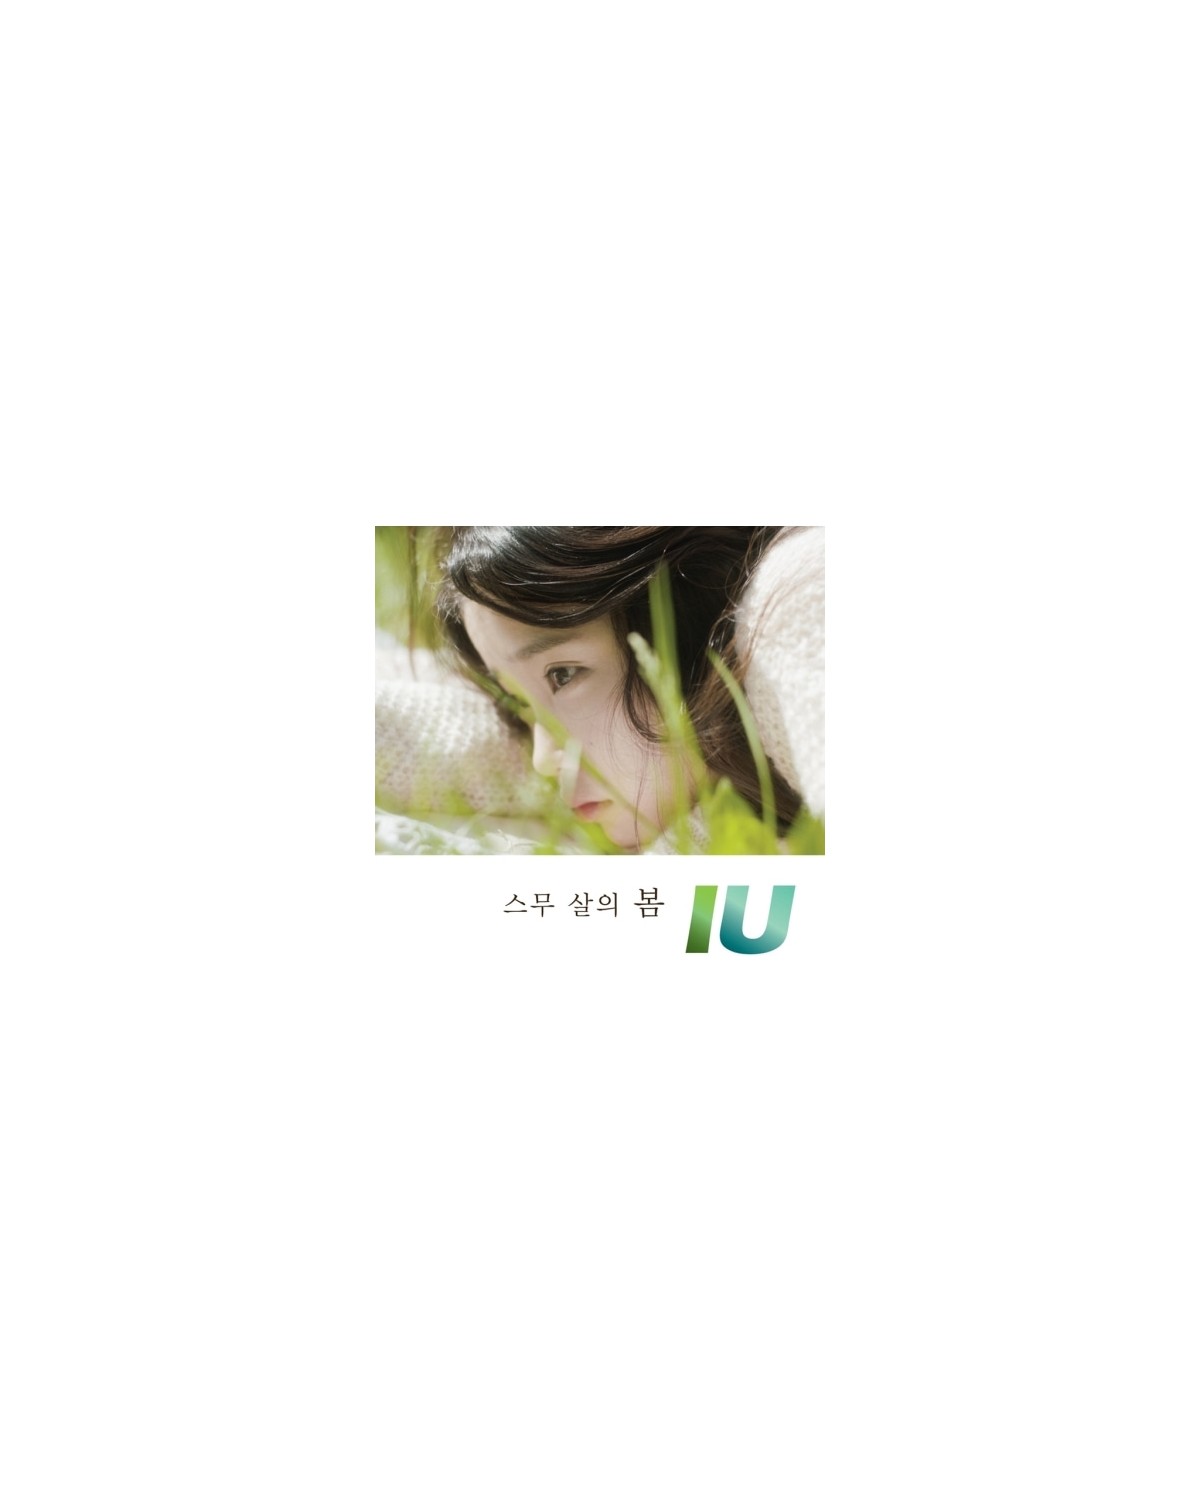 IU - TWENTY YEARS OF SPRING (SINGLE ALBUM) sklep poznań album płyta kpop